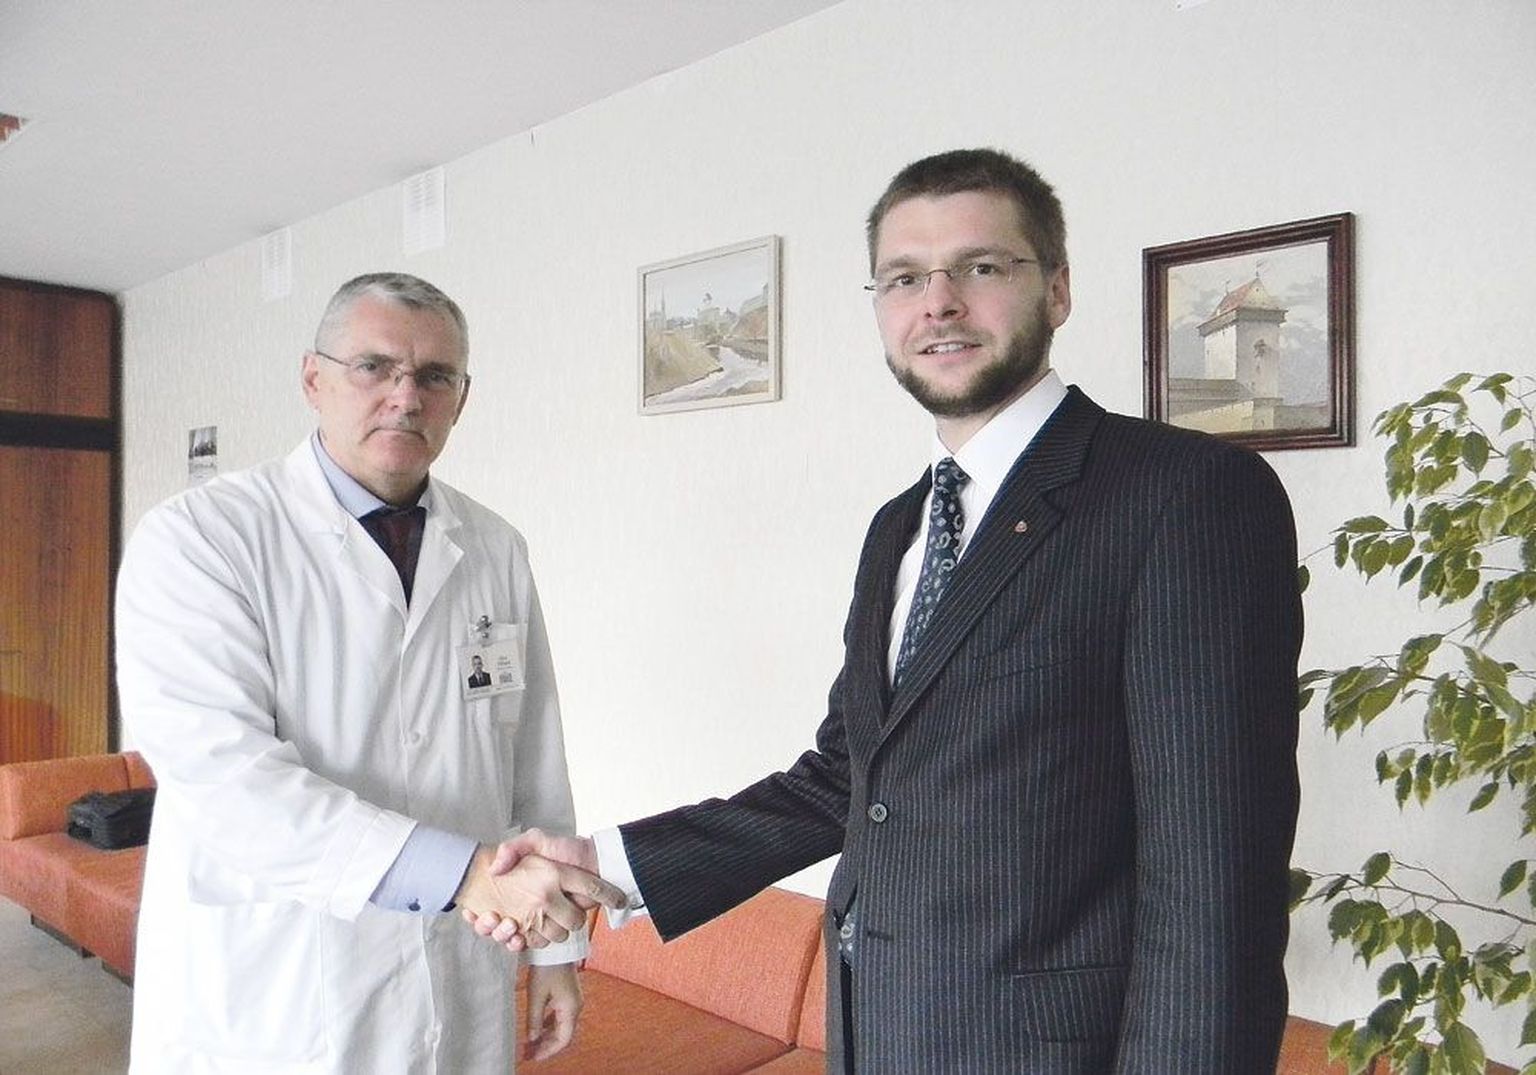 Евгений Осиновский на встрече с главным врачом Нарвской больницы Олевом Силландом.